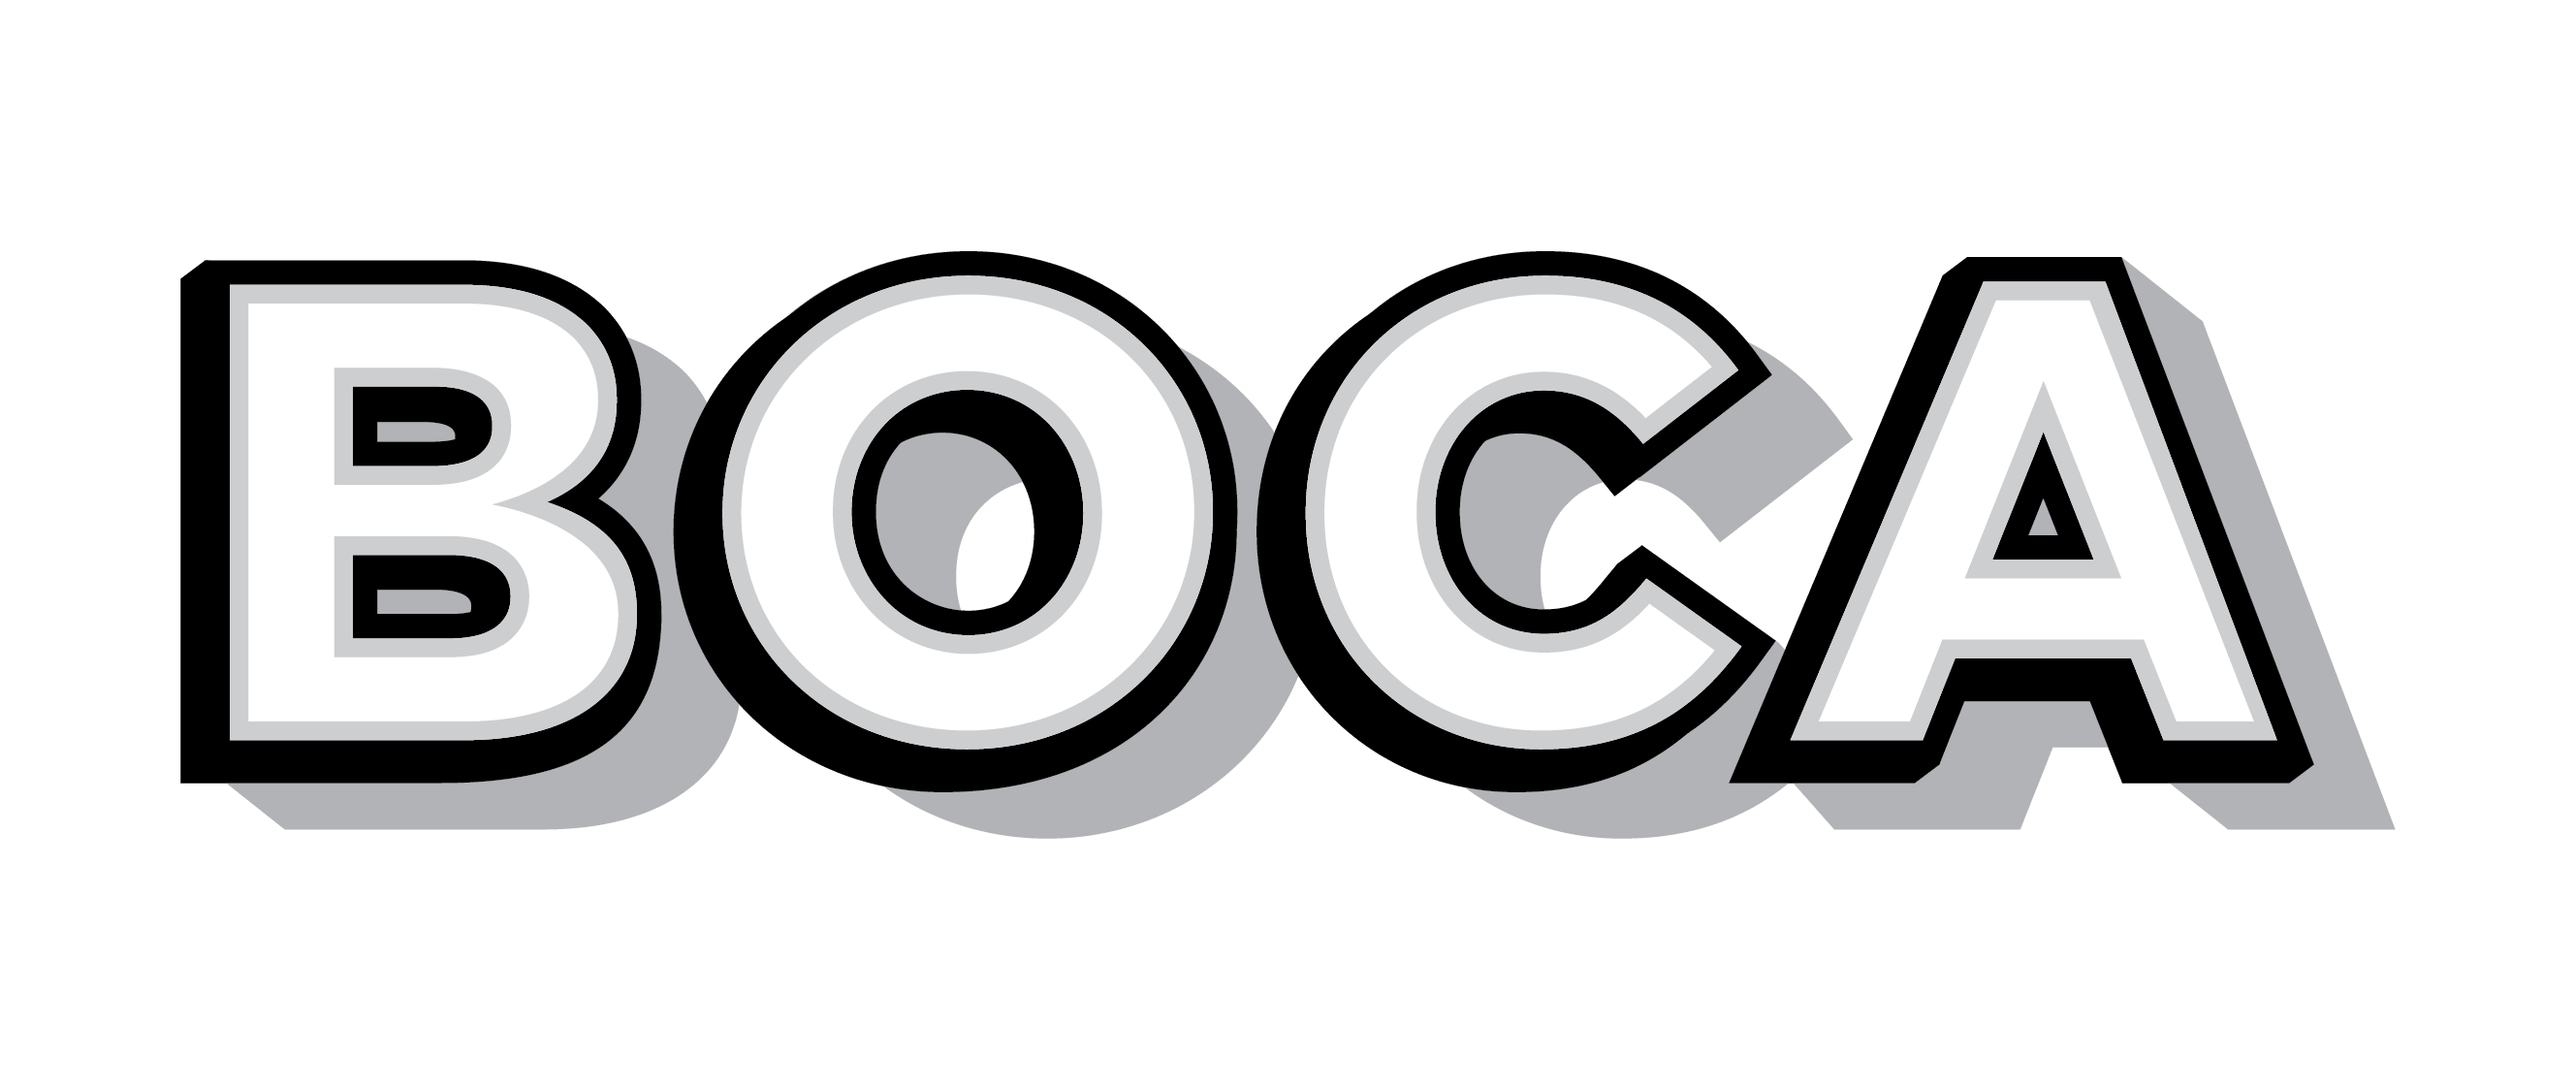 Boca Vegan Food Brand Review